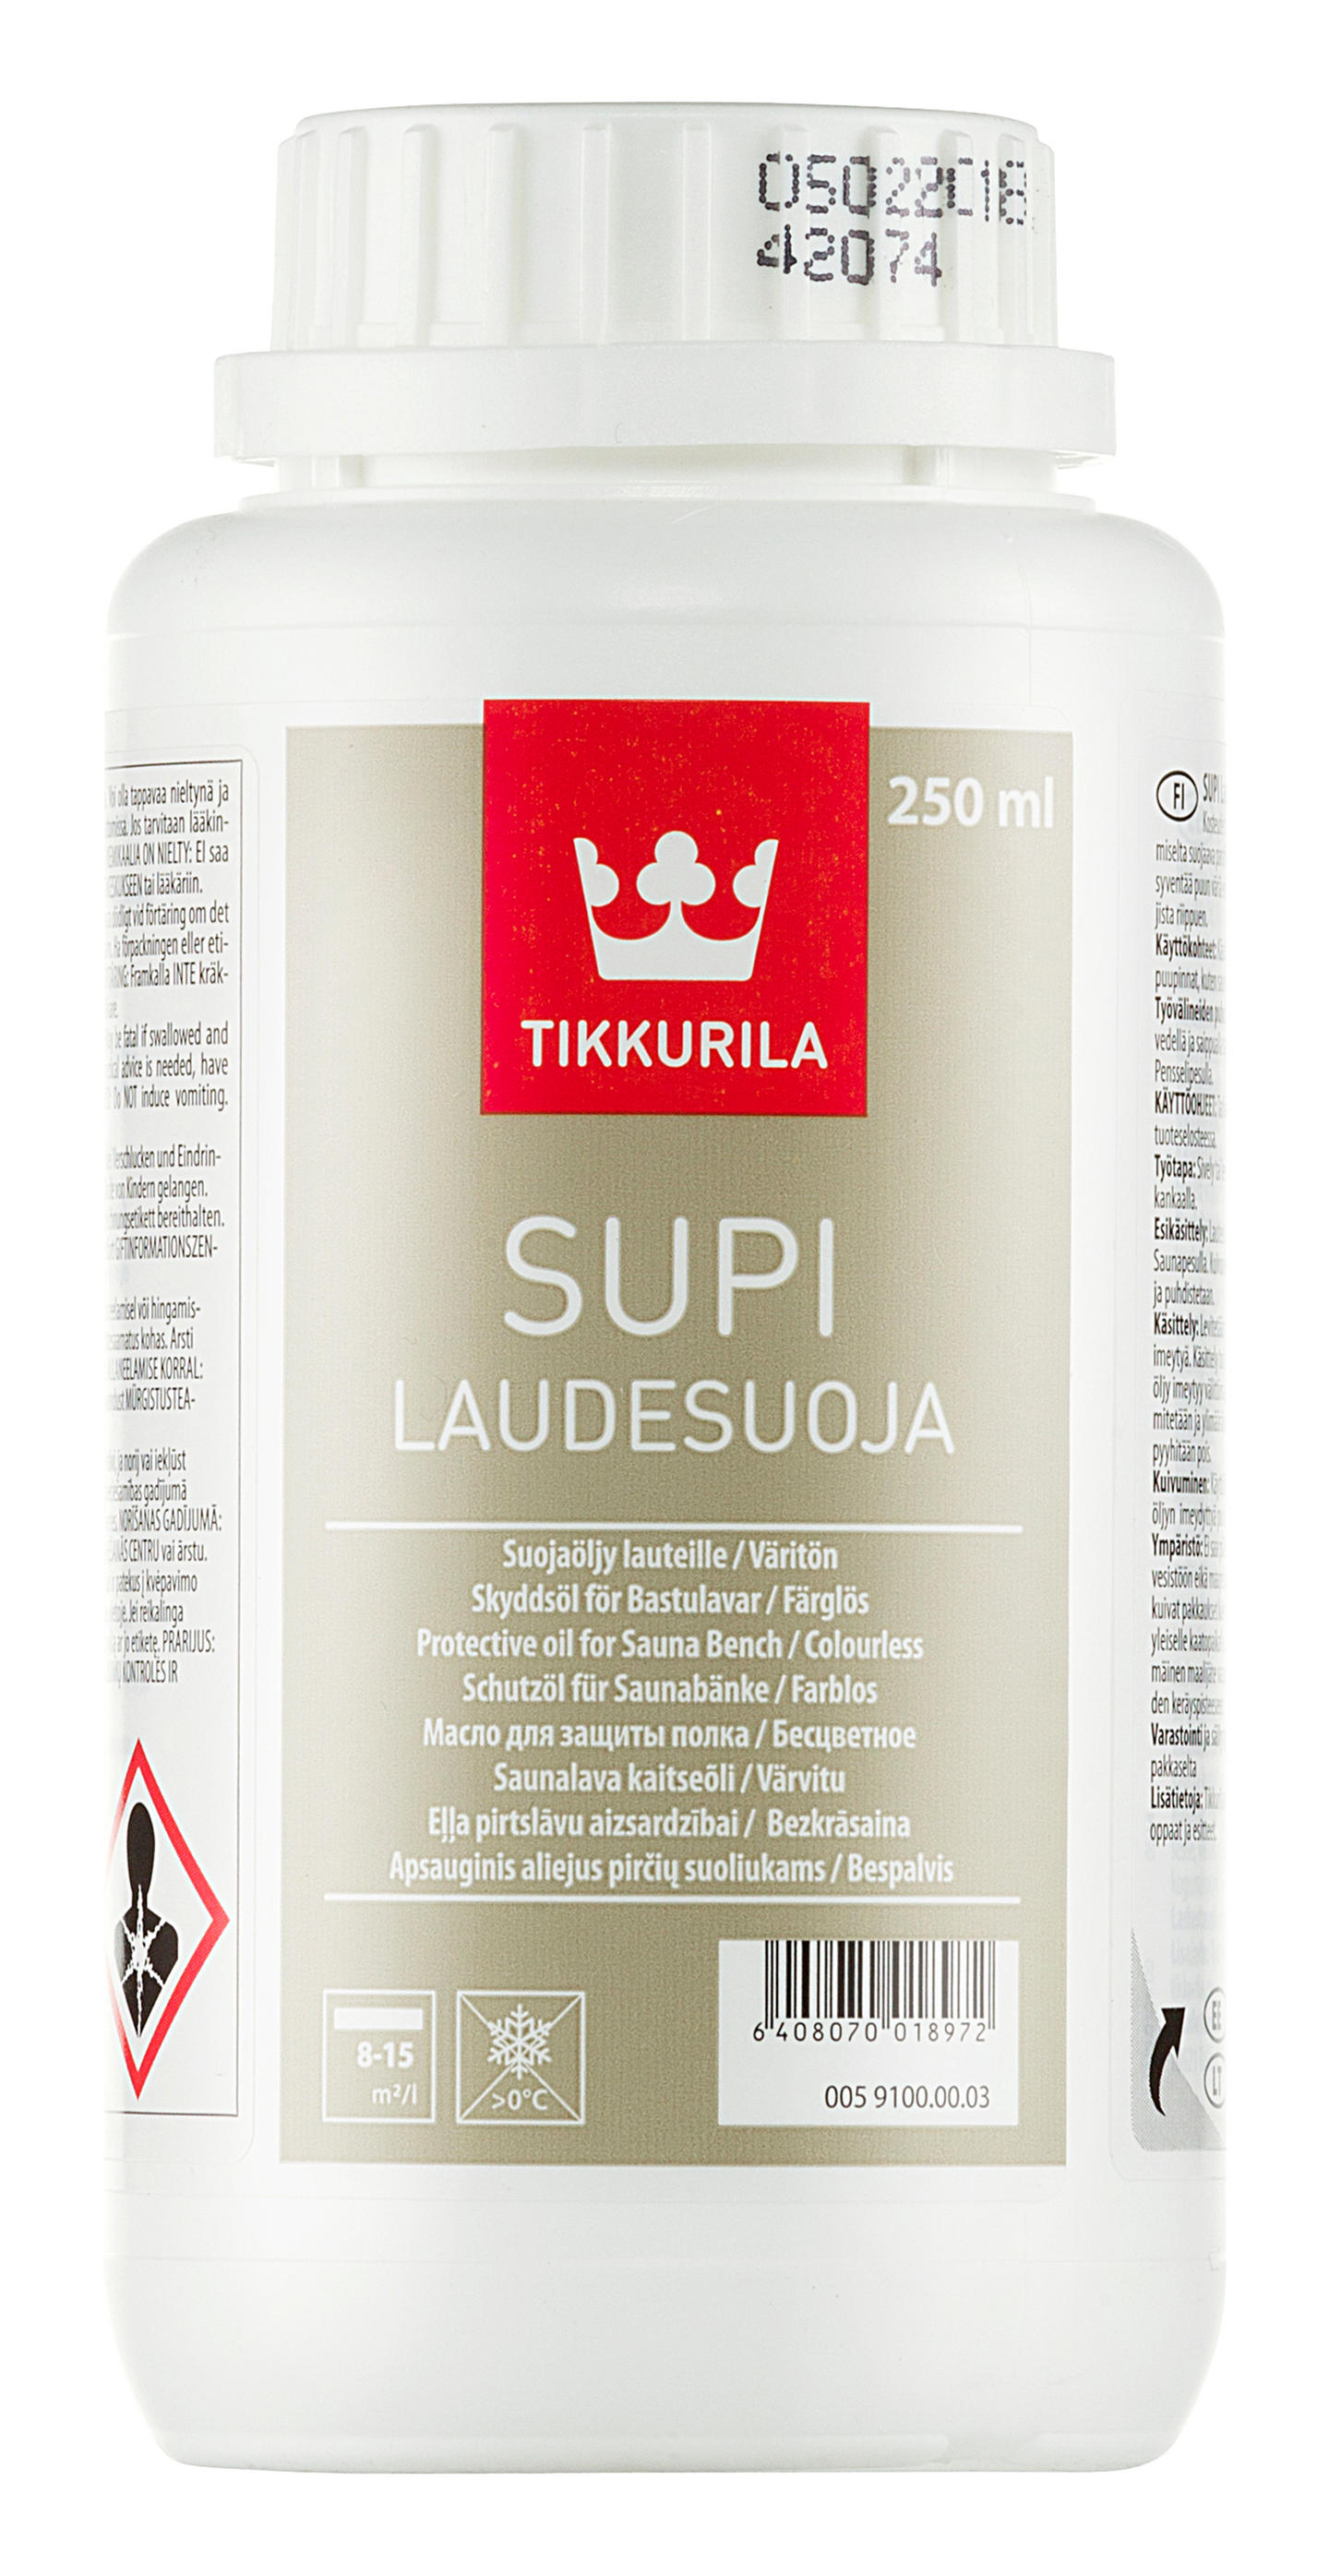 Тиккурила для бань купить. Защита для полка Supi Laudesuoja 1л. Масло для полков Tikkurila Supi Laudesuoja 1 л. Средство моющее Tikkurila Supi saunapesu. Супи Лаудесуоя 1л масло для полков.